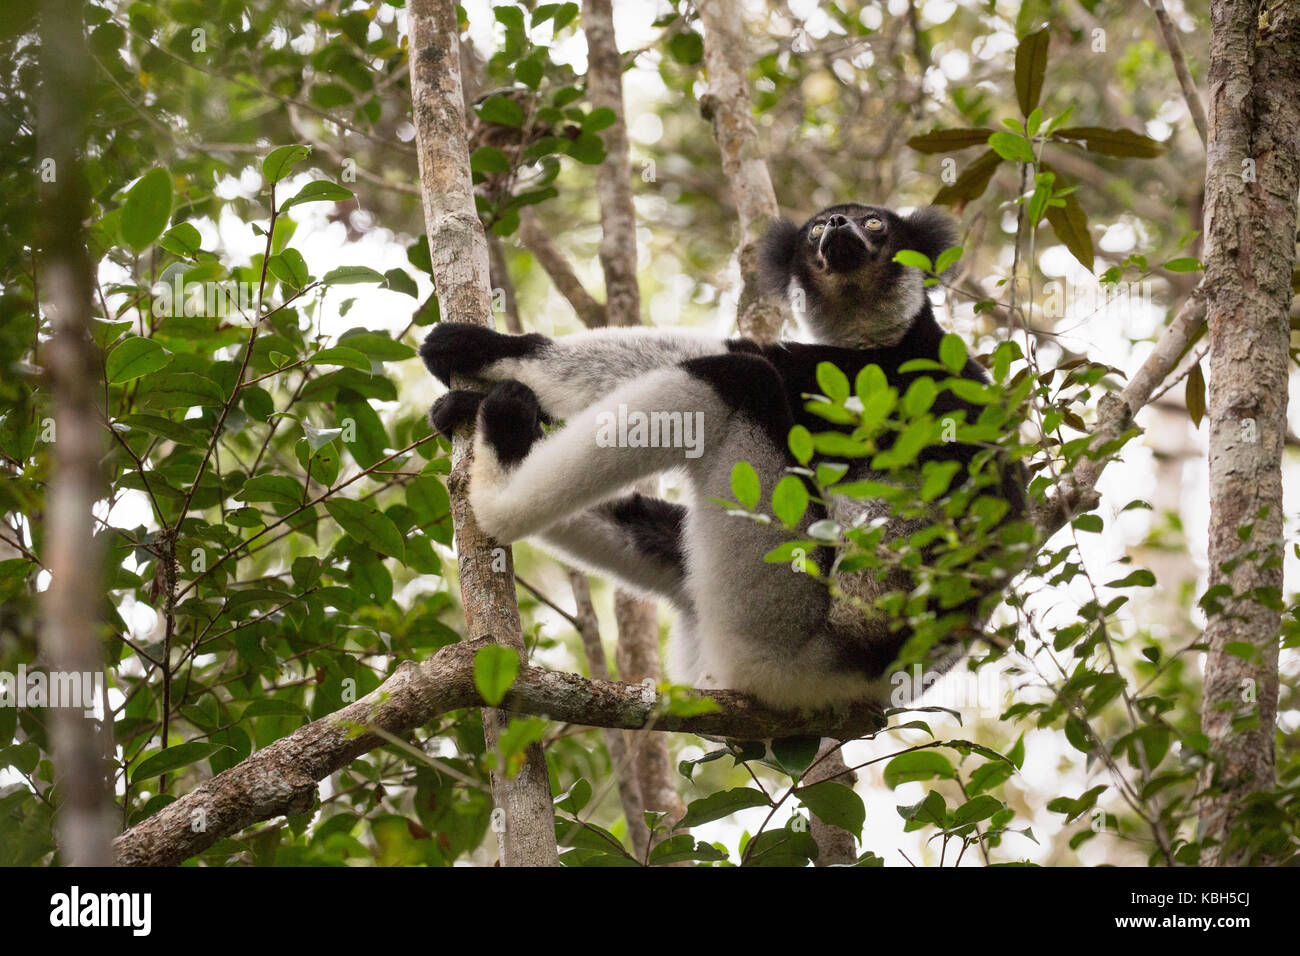 Africa, Madgascar, Andasibe Mantadia National Park, selvatici (Indri Indri Indri Indri), il più grande del mondo lemur seduta nella struttura ad albero. Foto Stock